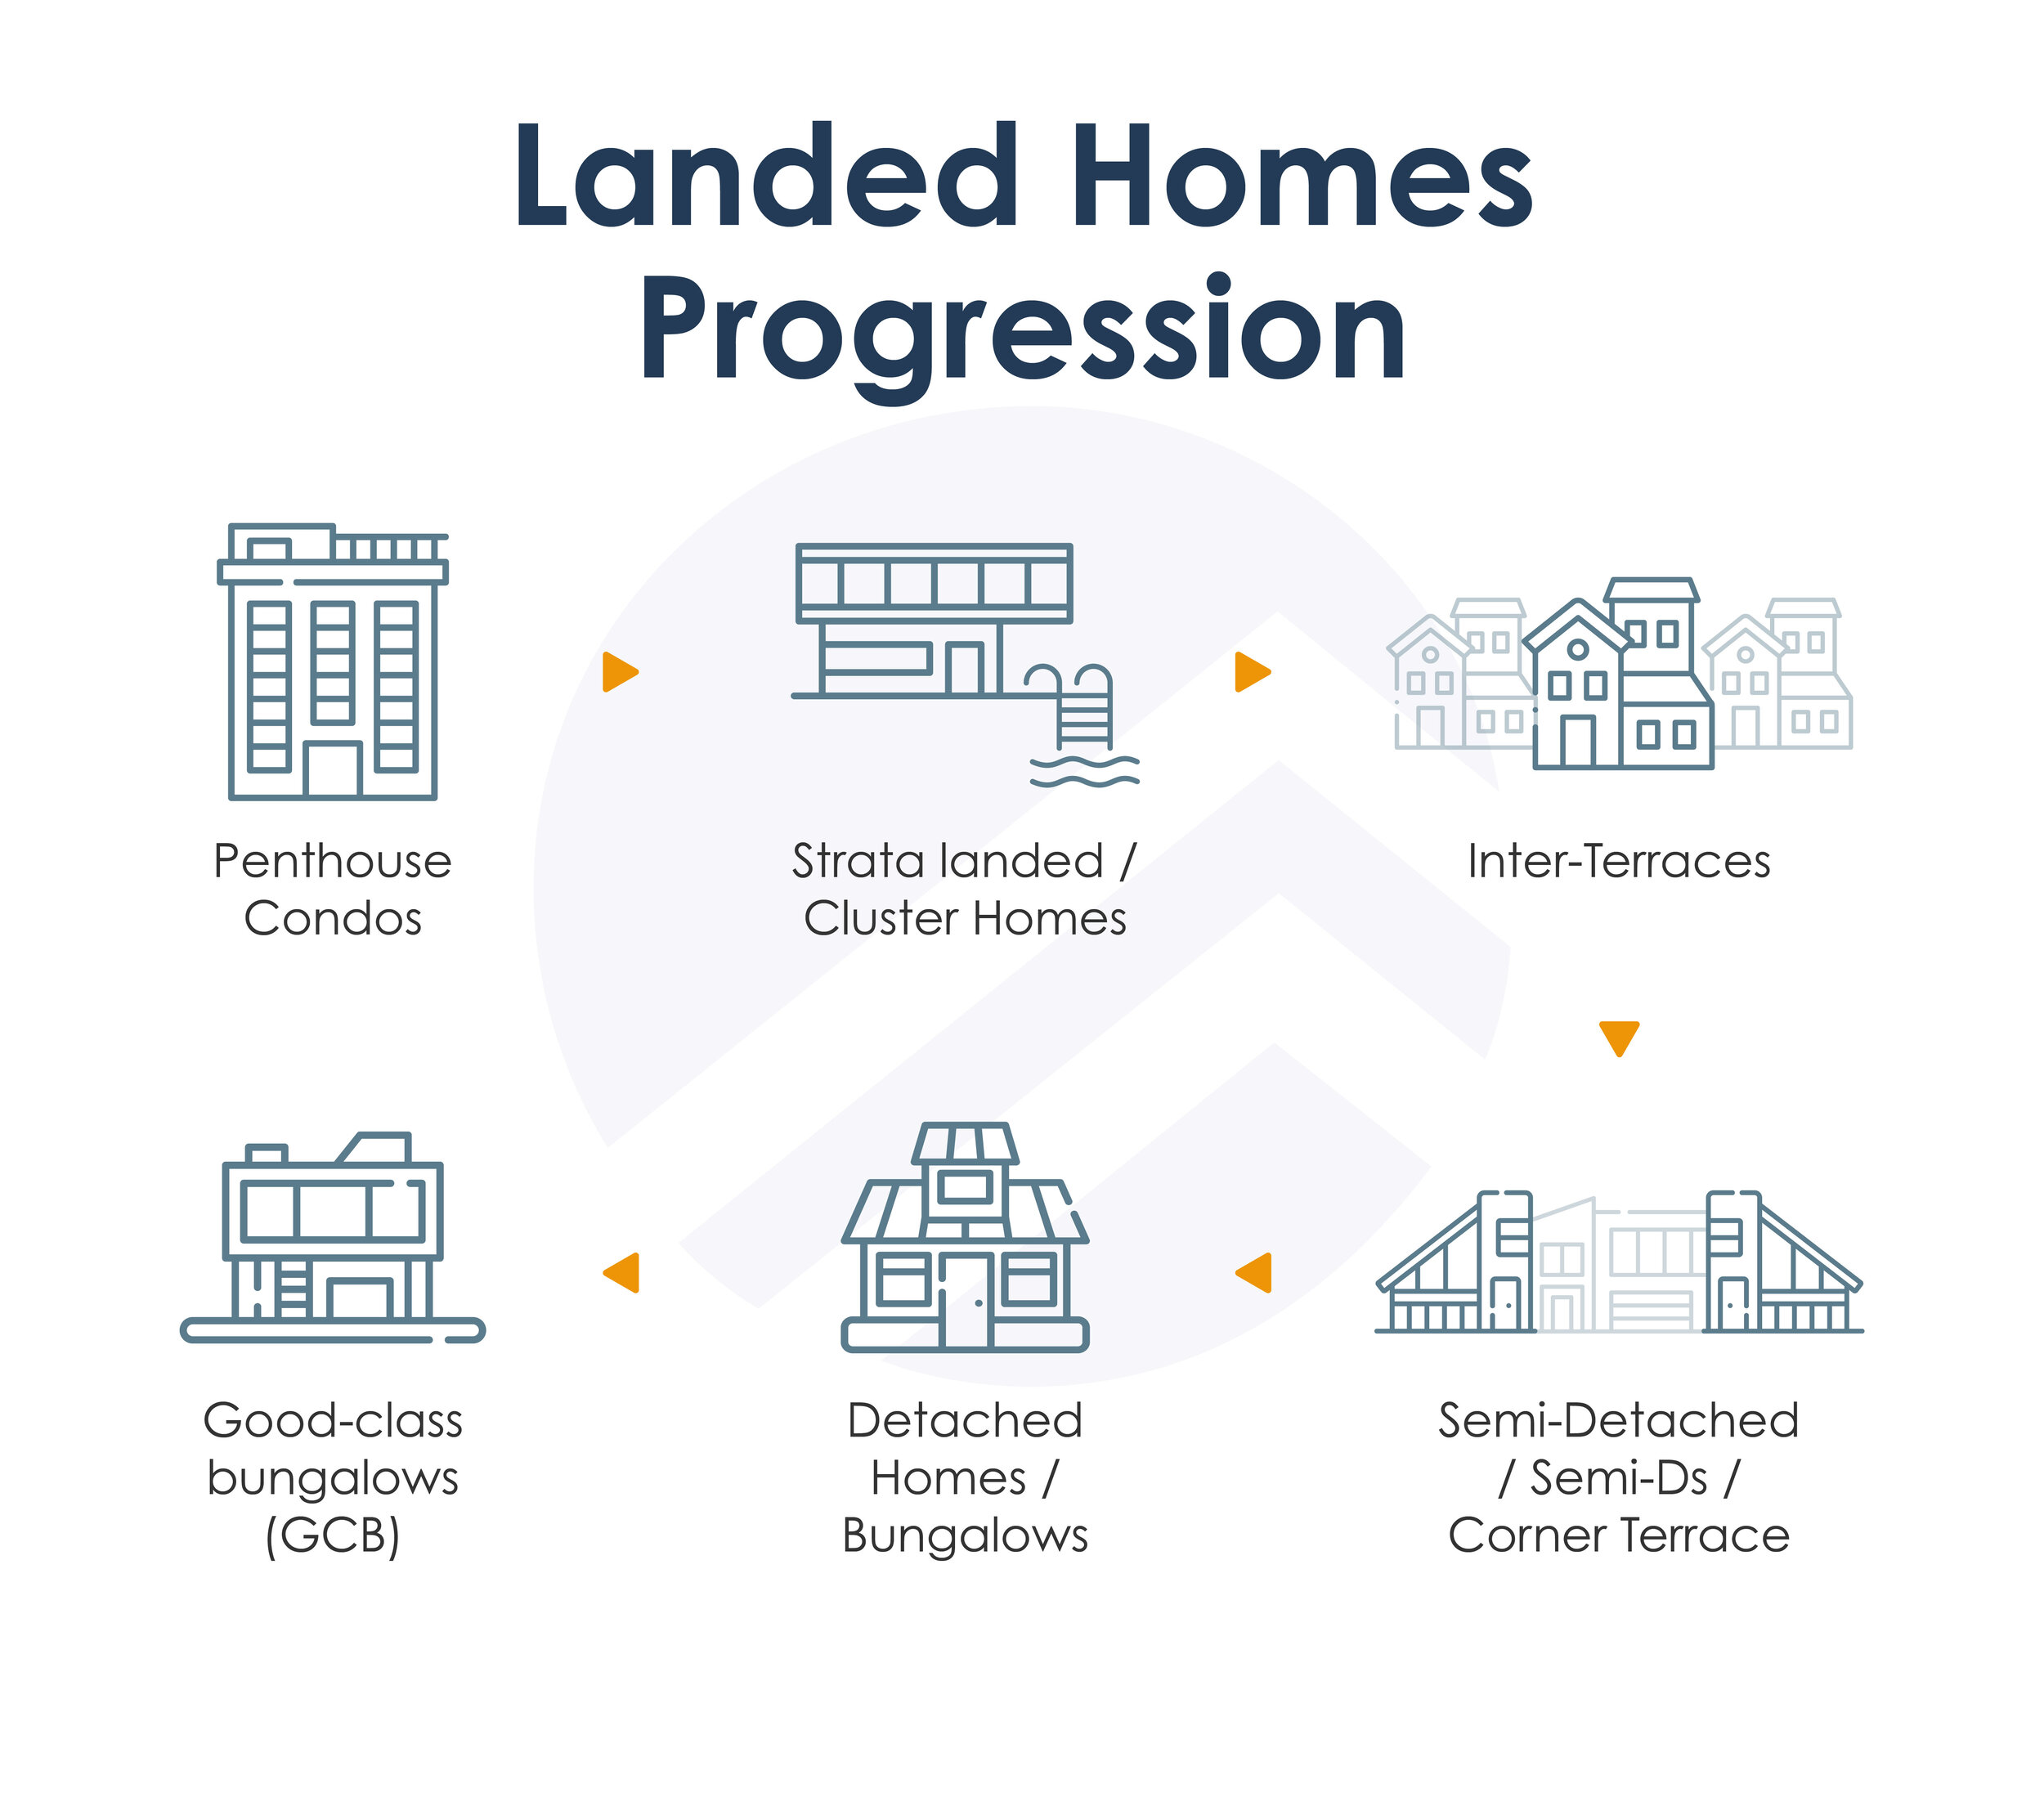 5 types of landed homes_Landed Homes Progression.jpg